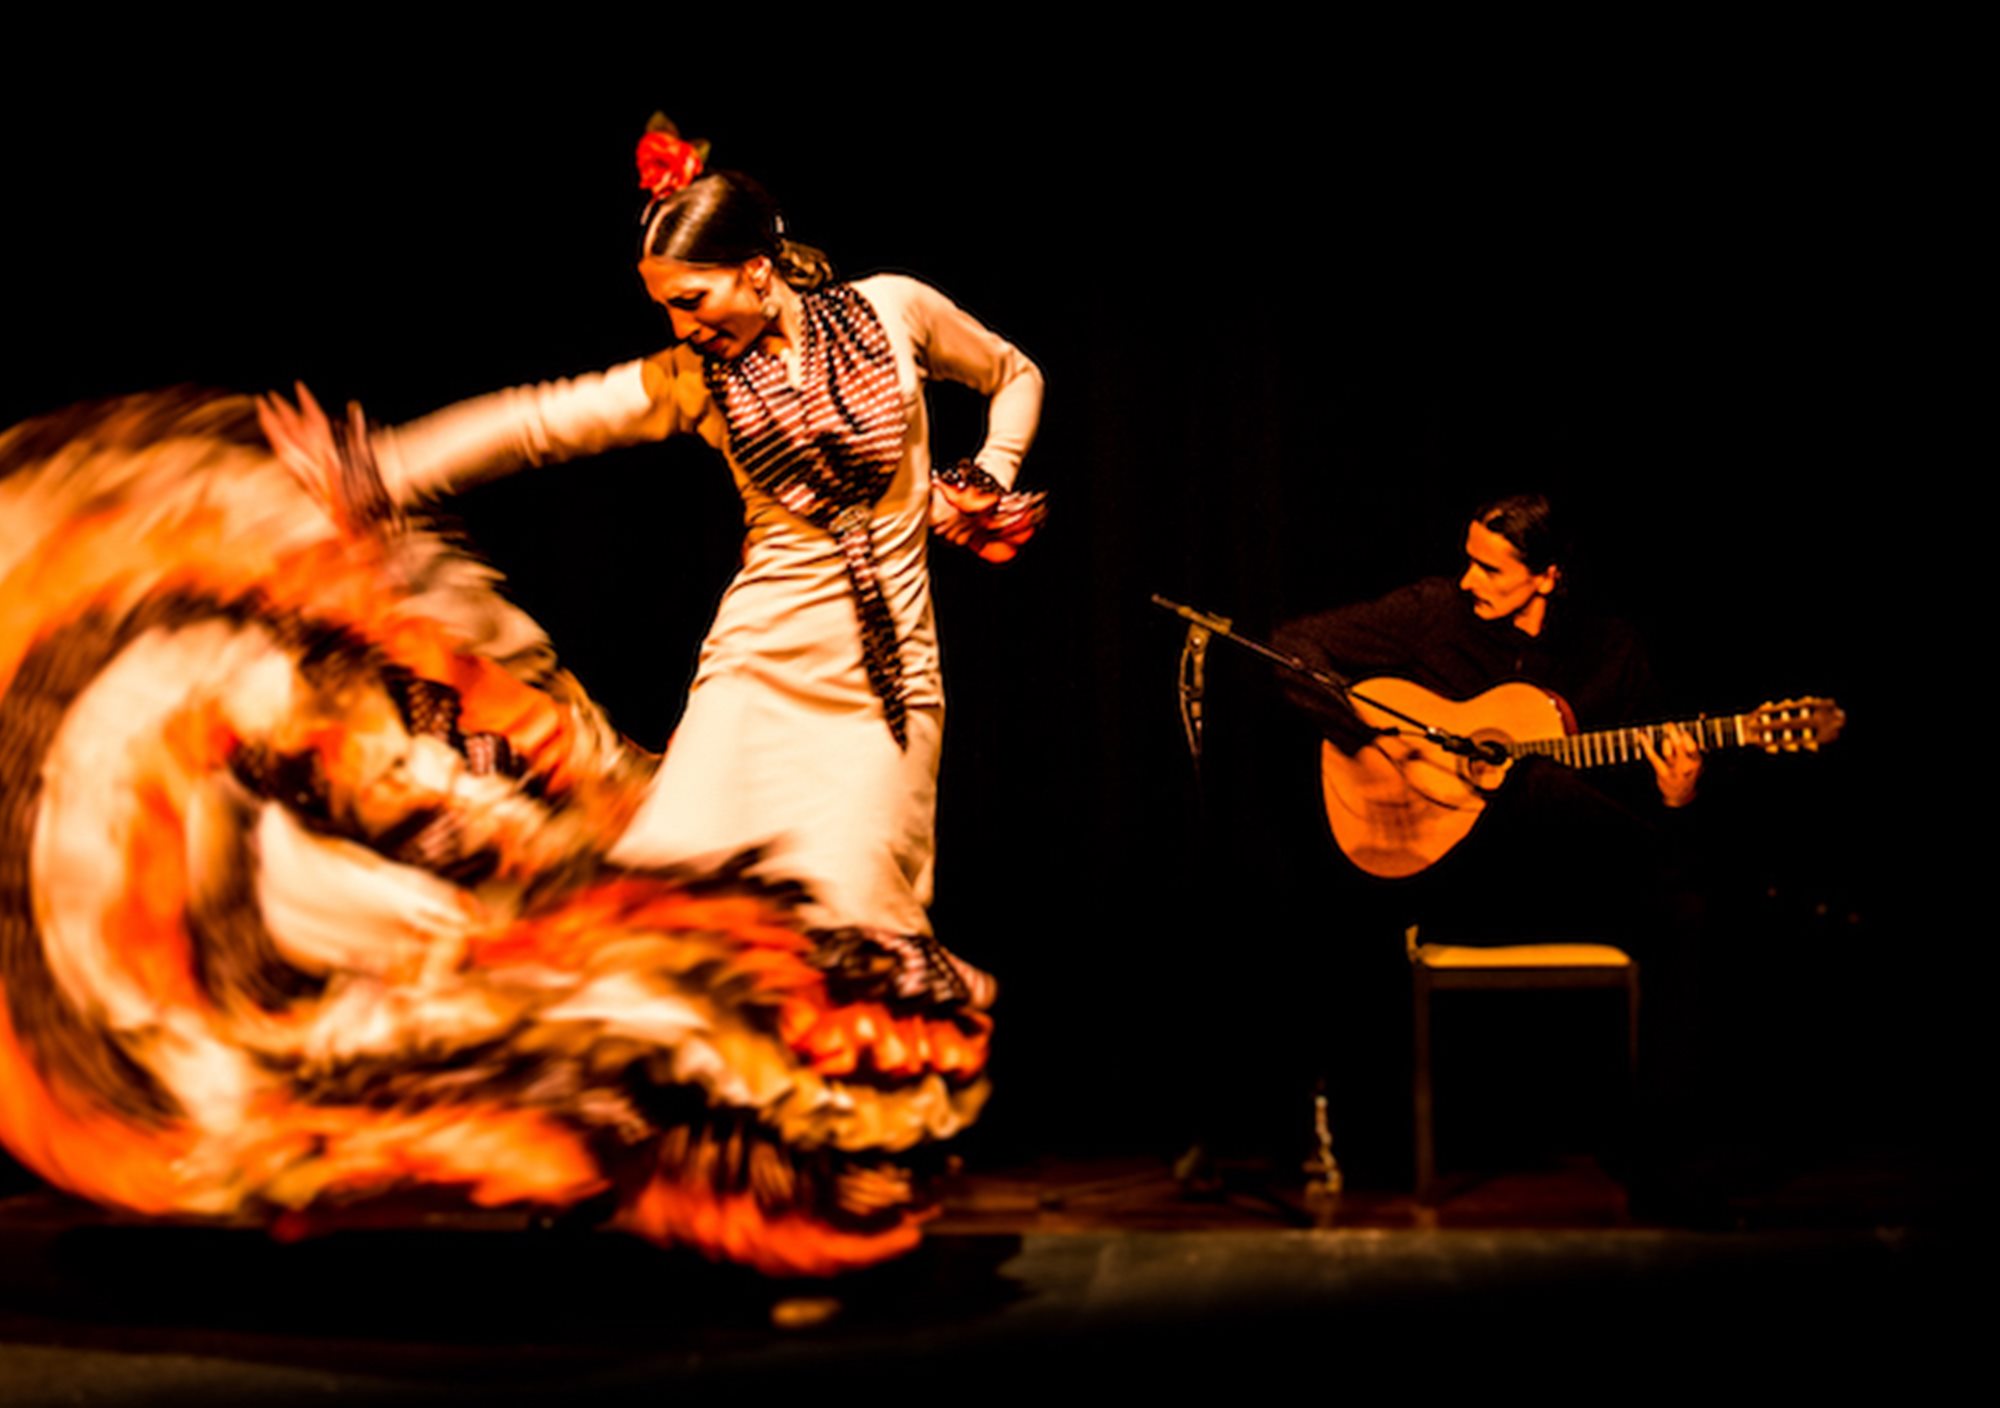 acheter réserver réservations tours visites Spectacle du flamenco à La Cueva de Lola billets visiter madrid